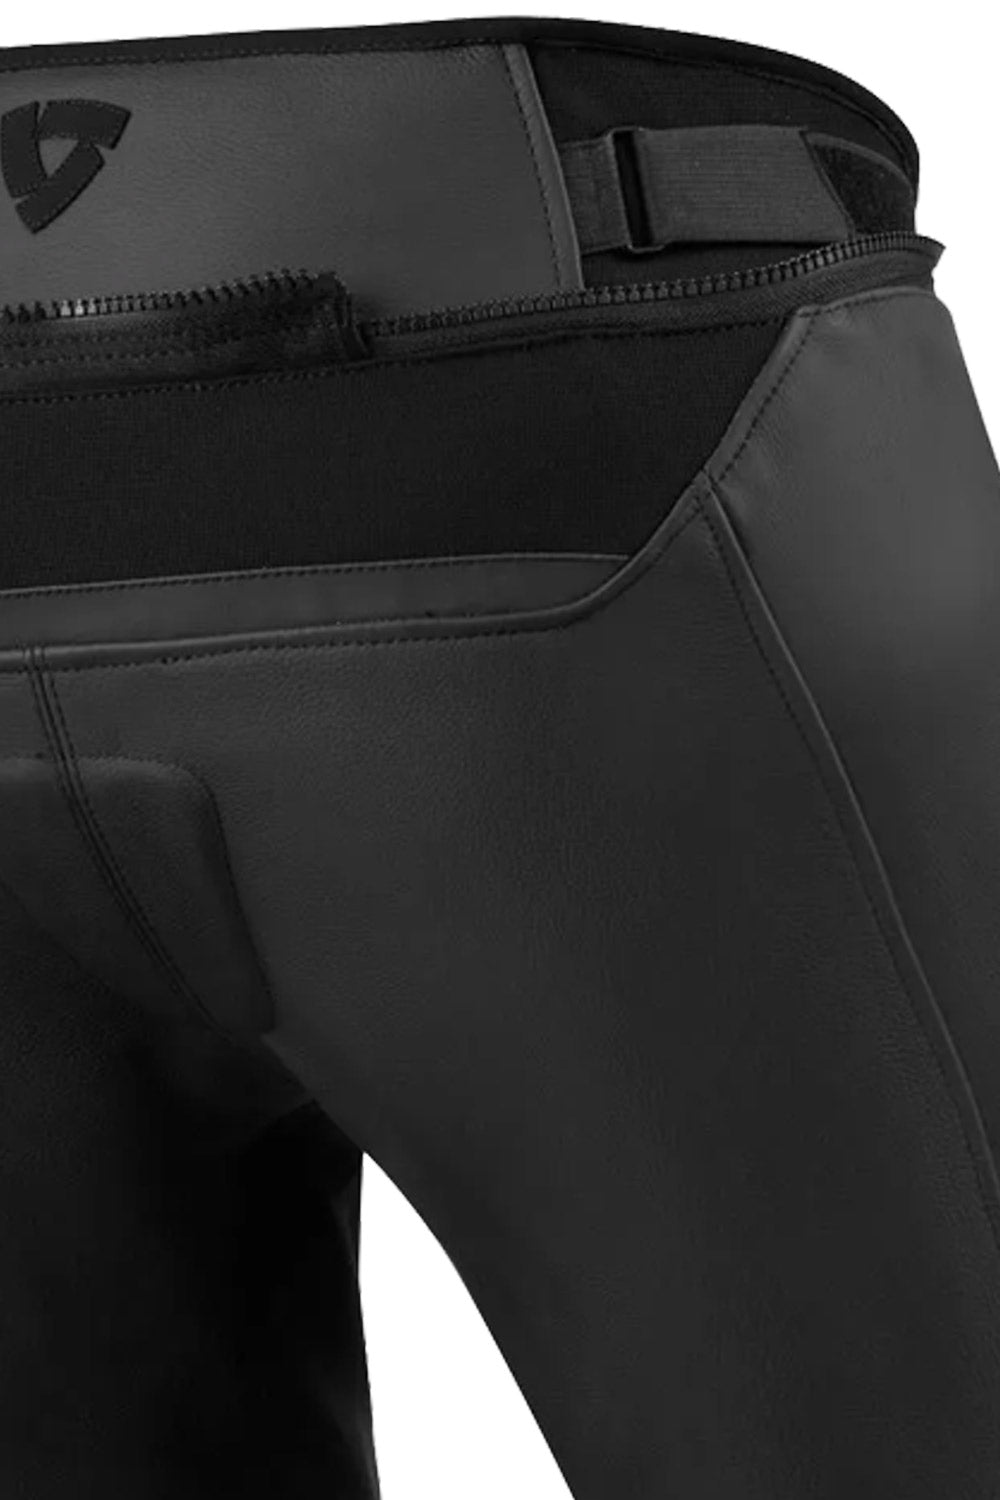 Revit Gear 2 Ladies Textile/Leather Pants Size S (28/29 waist) | eBay